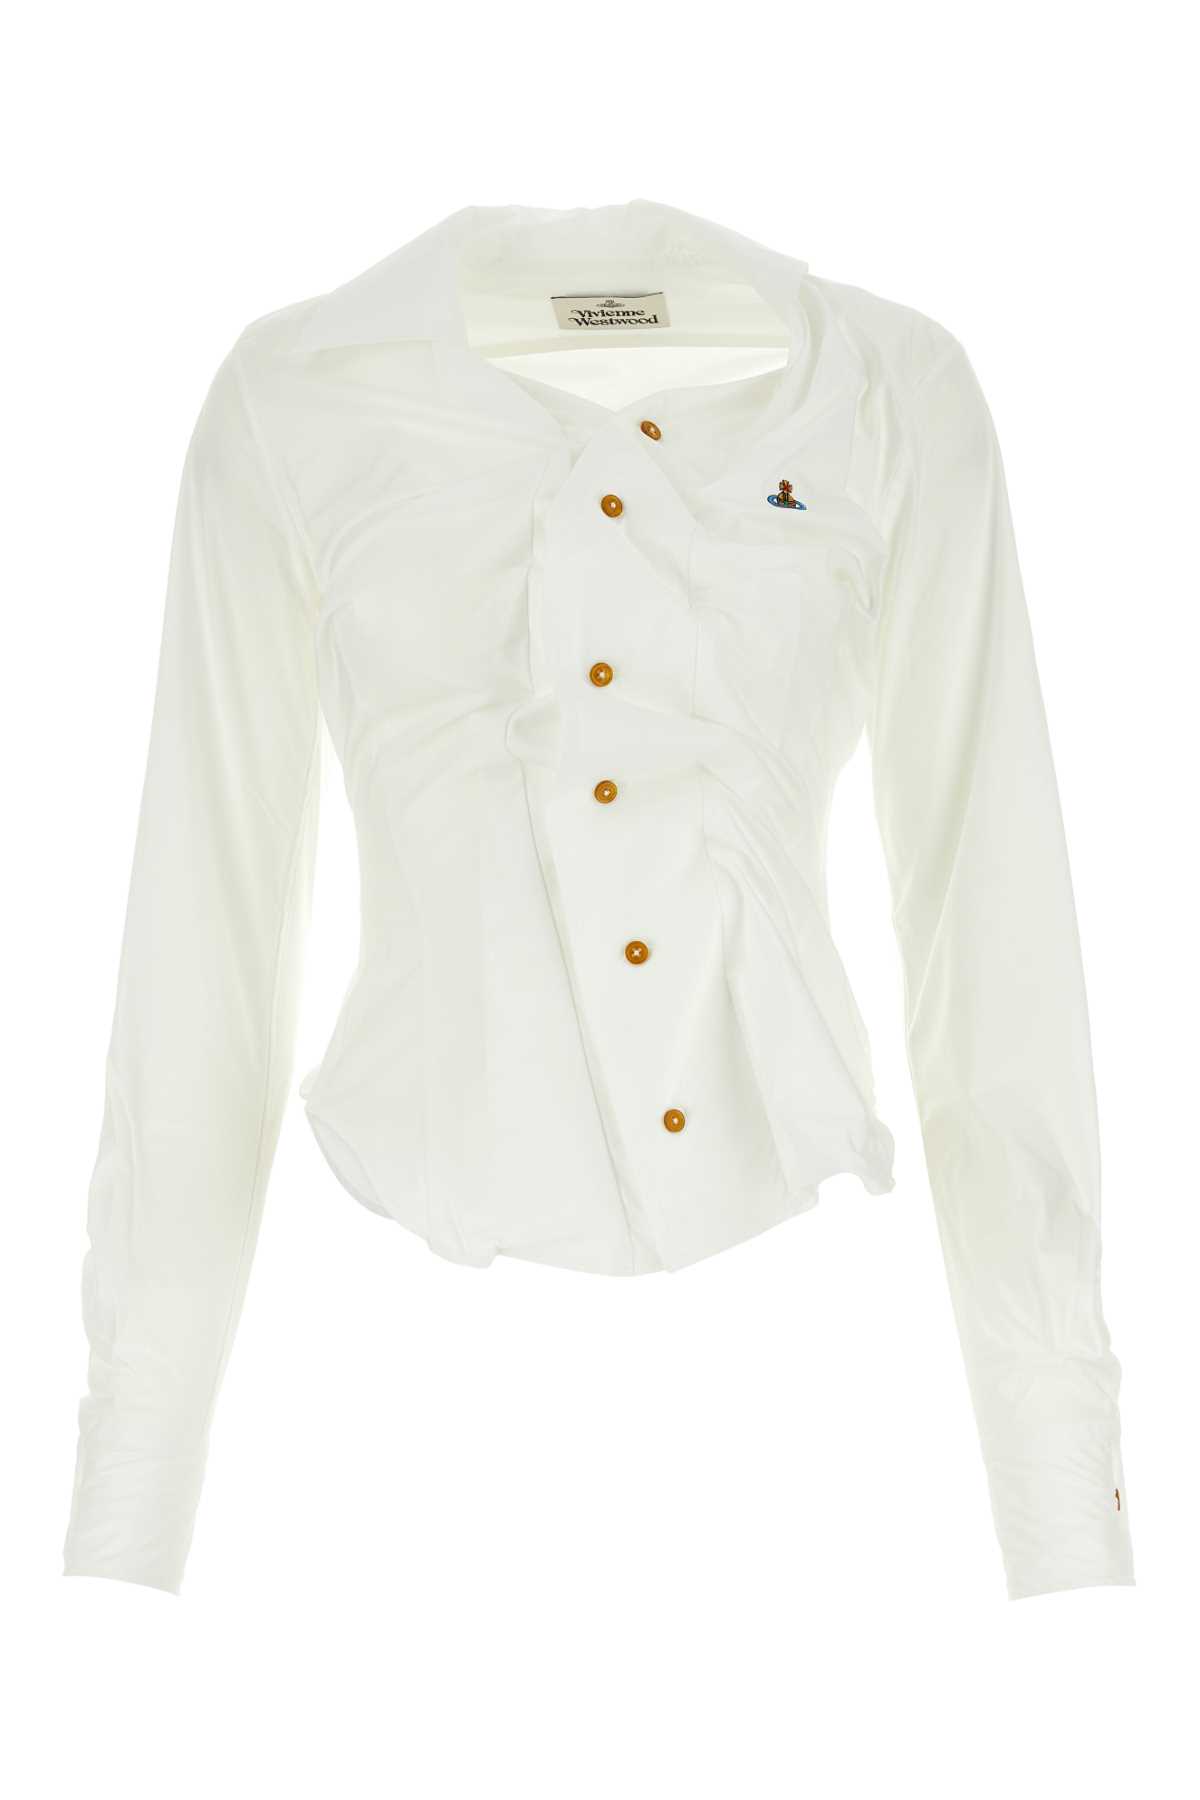 Vivienne Westwood White Cotton Drunken Shirt